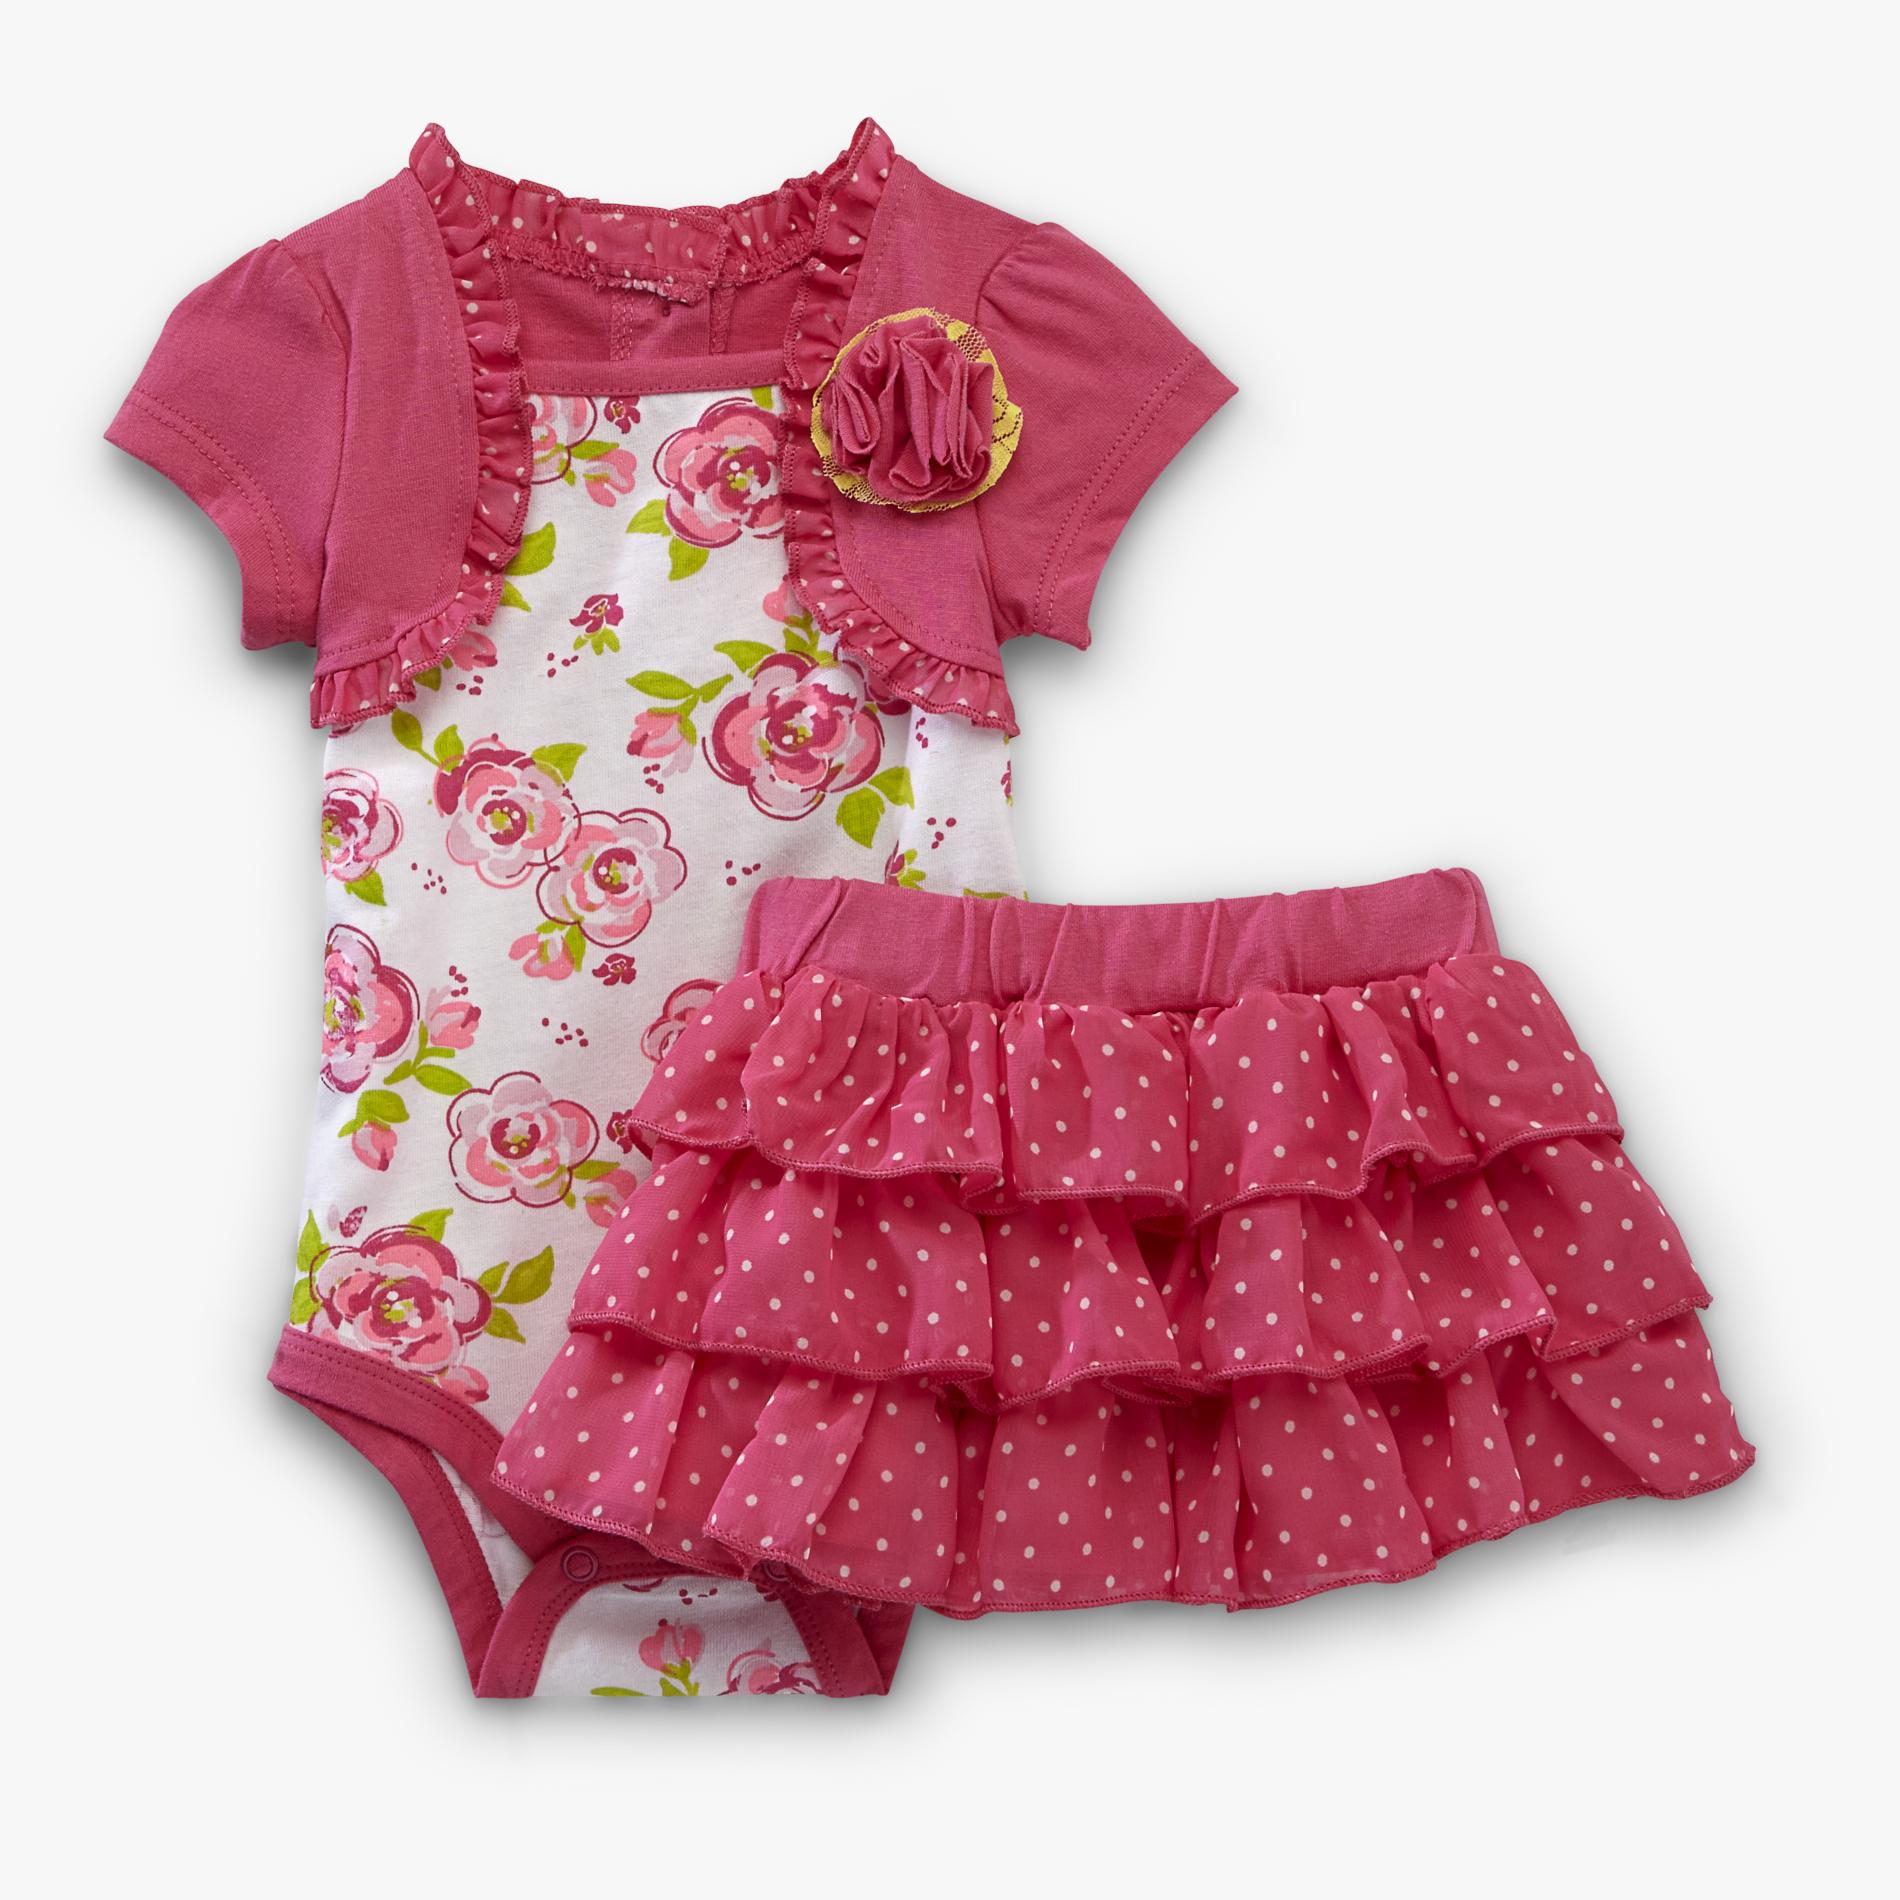 Small Wonders Infant Girl's Bodysuit & Skirt - Floral & Polka Dots